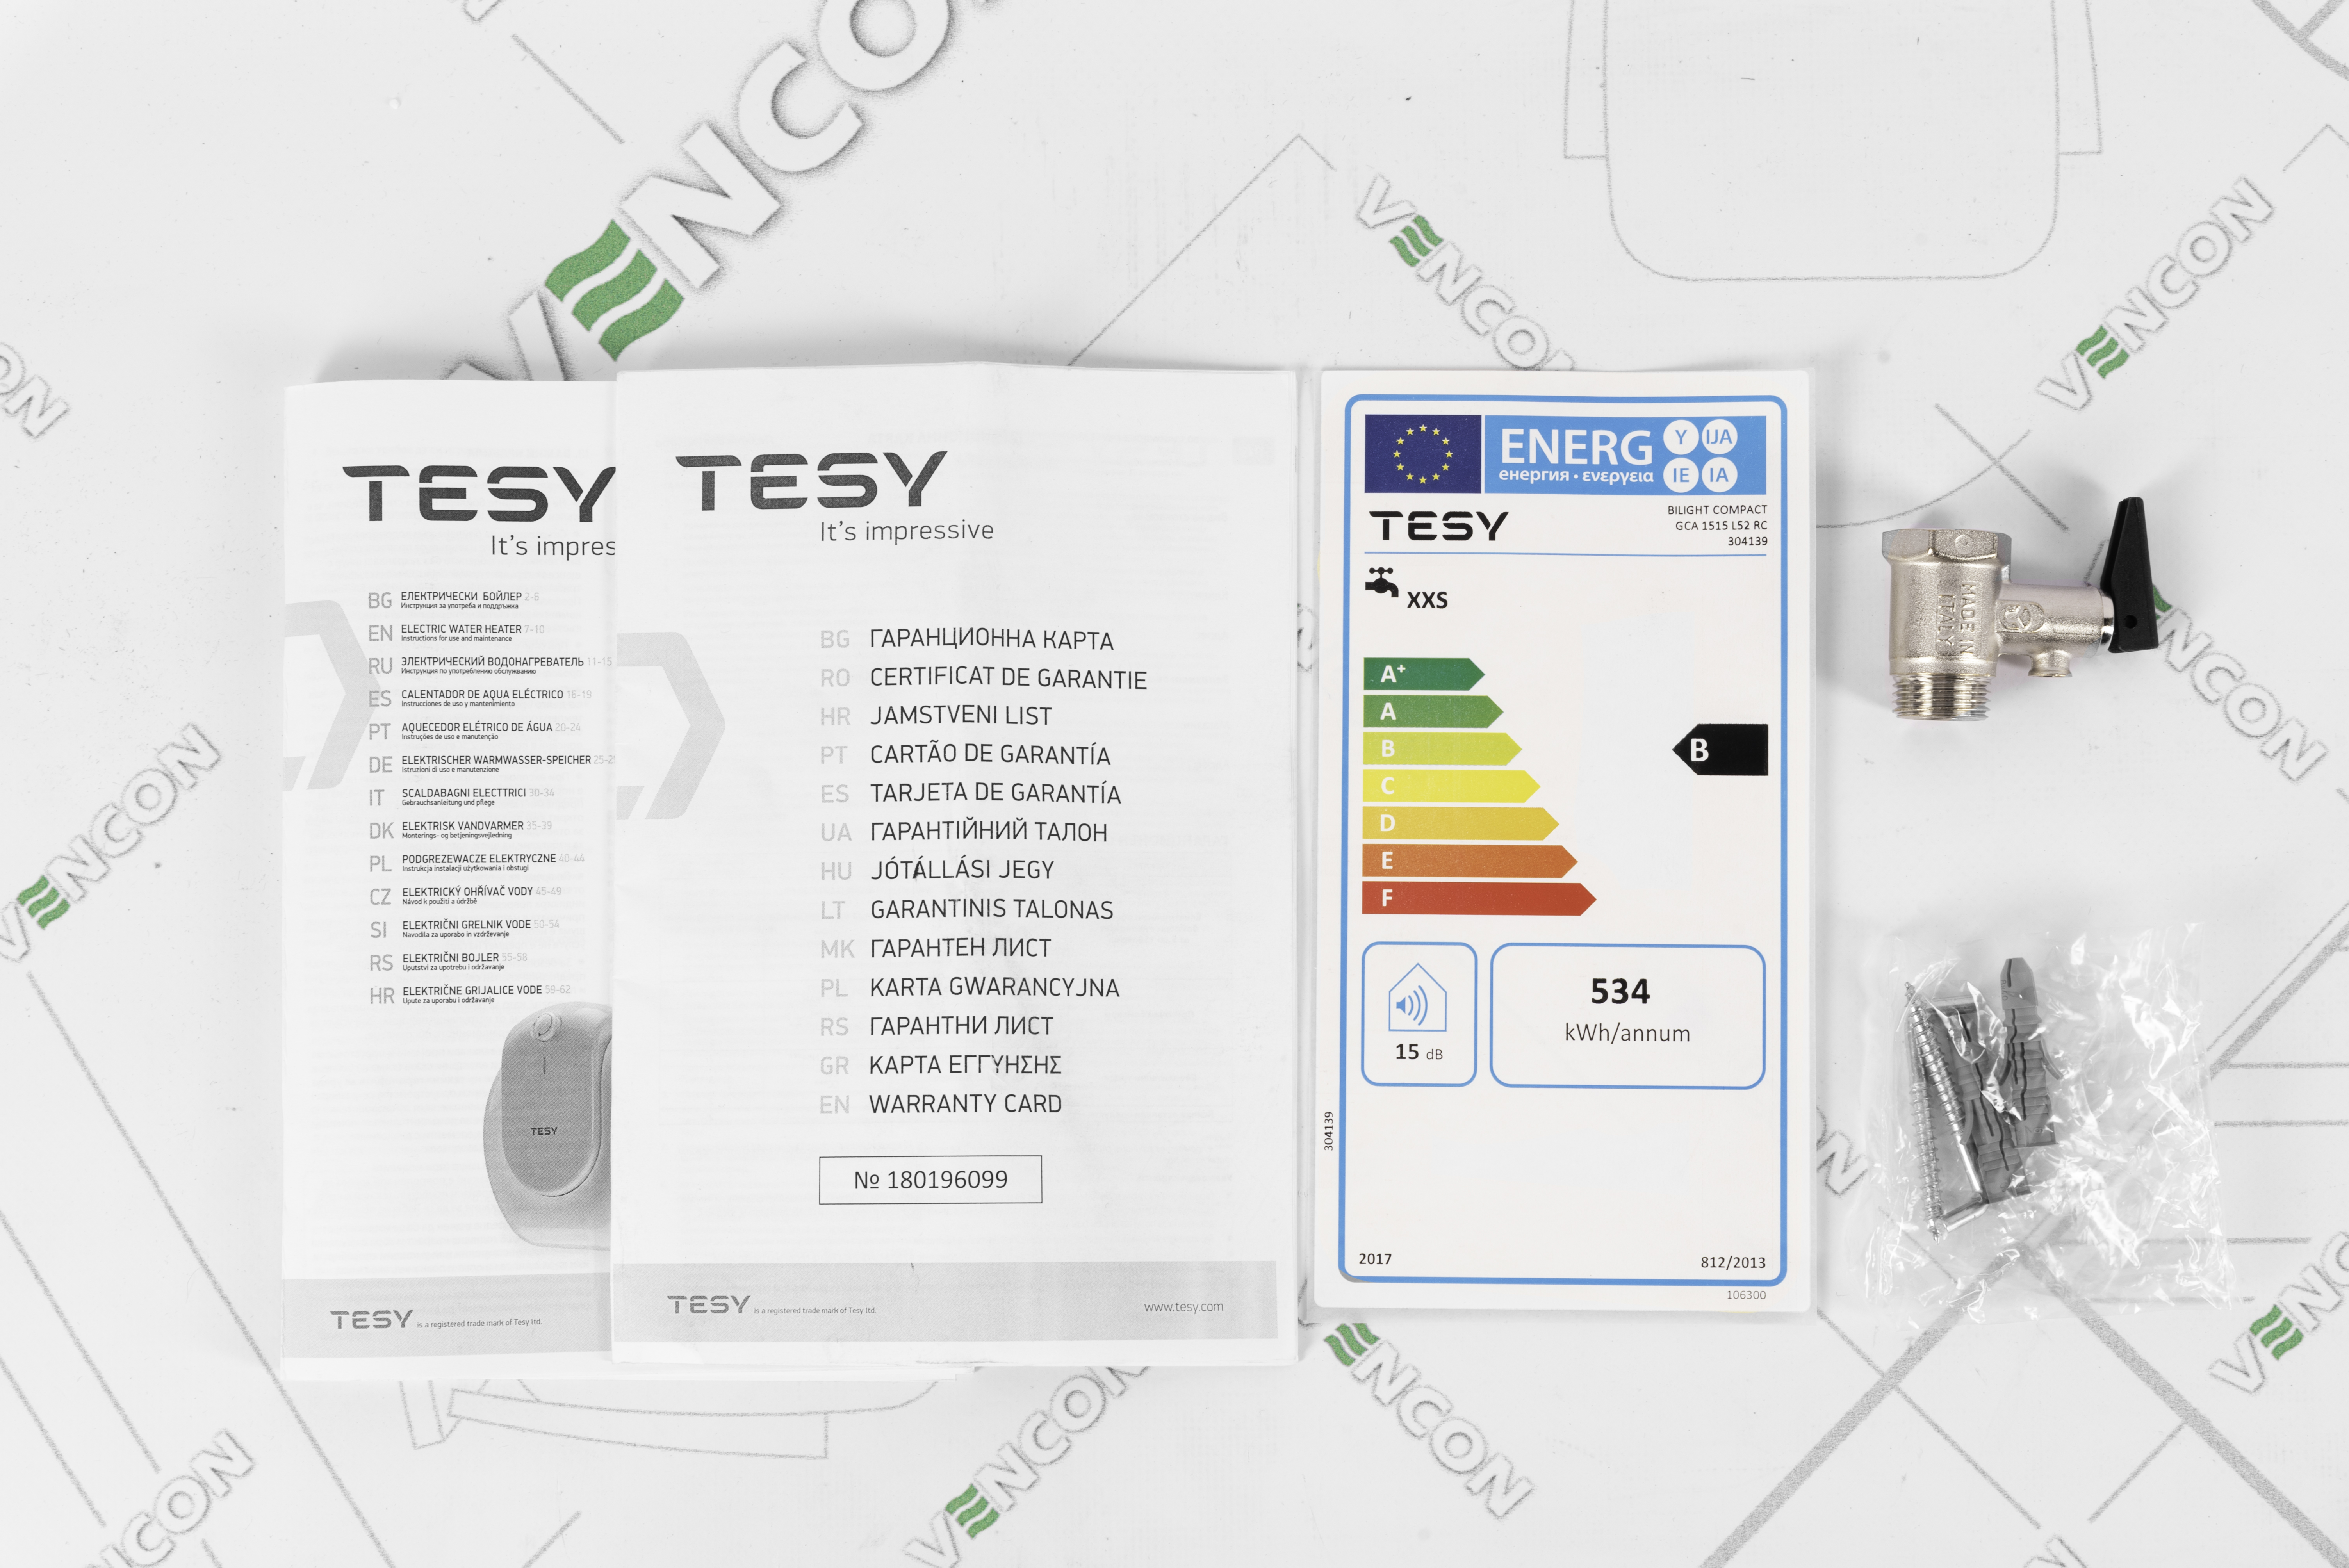 Tesy Compact Line BiLight GCA 1515 L52 RC в магазине в Киеве - фото 10